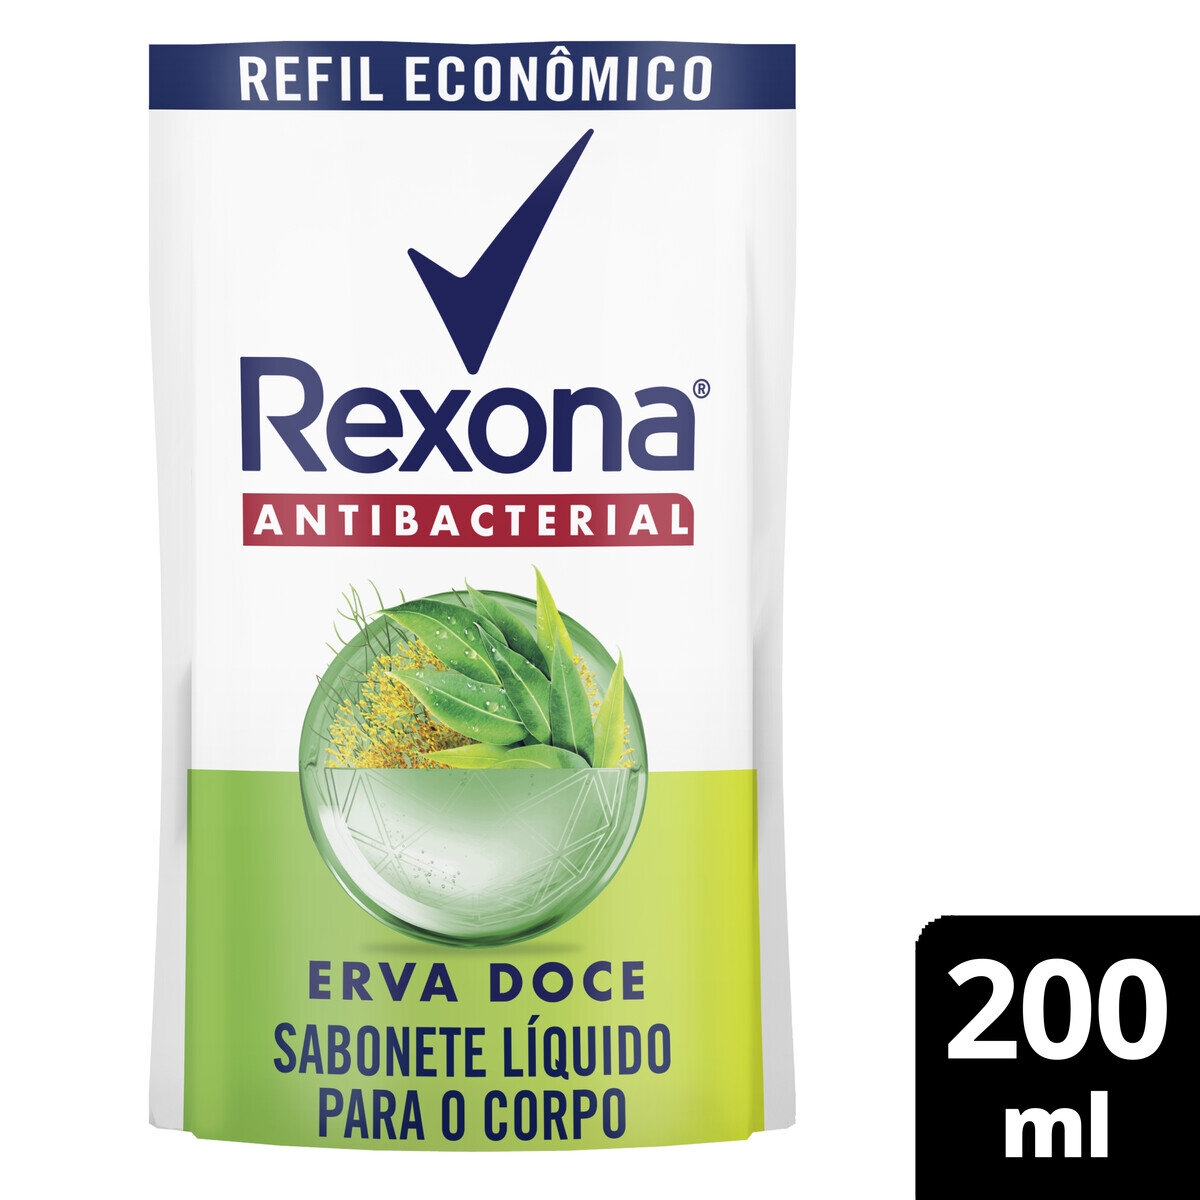 Refil Sabonete Líquido Rexona Antibacterial Erva-Doce Sachê 200ml